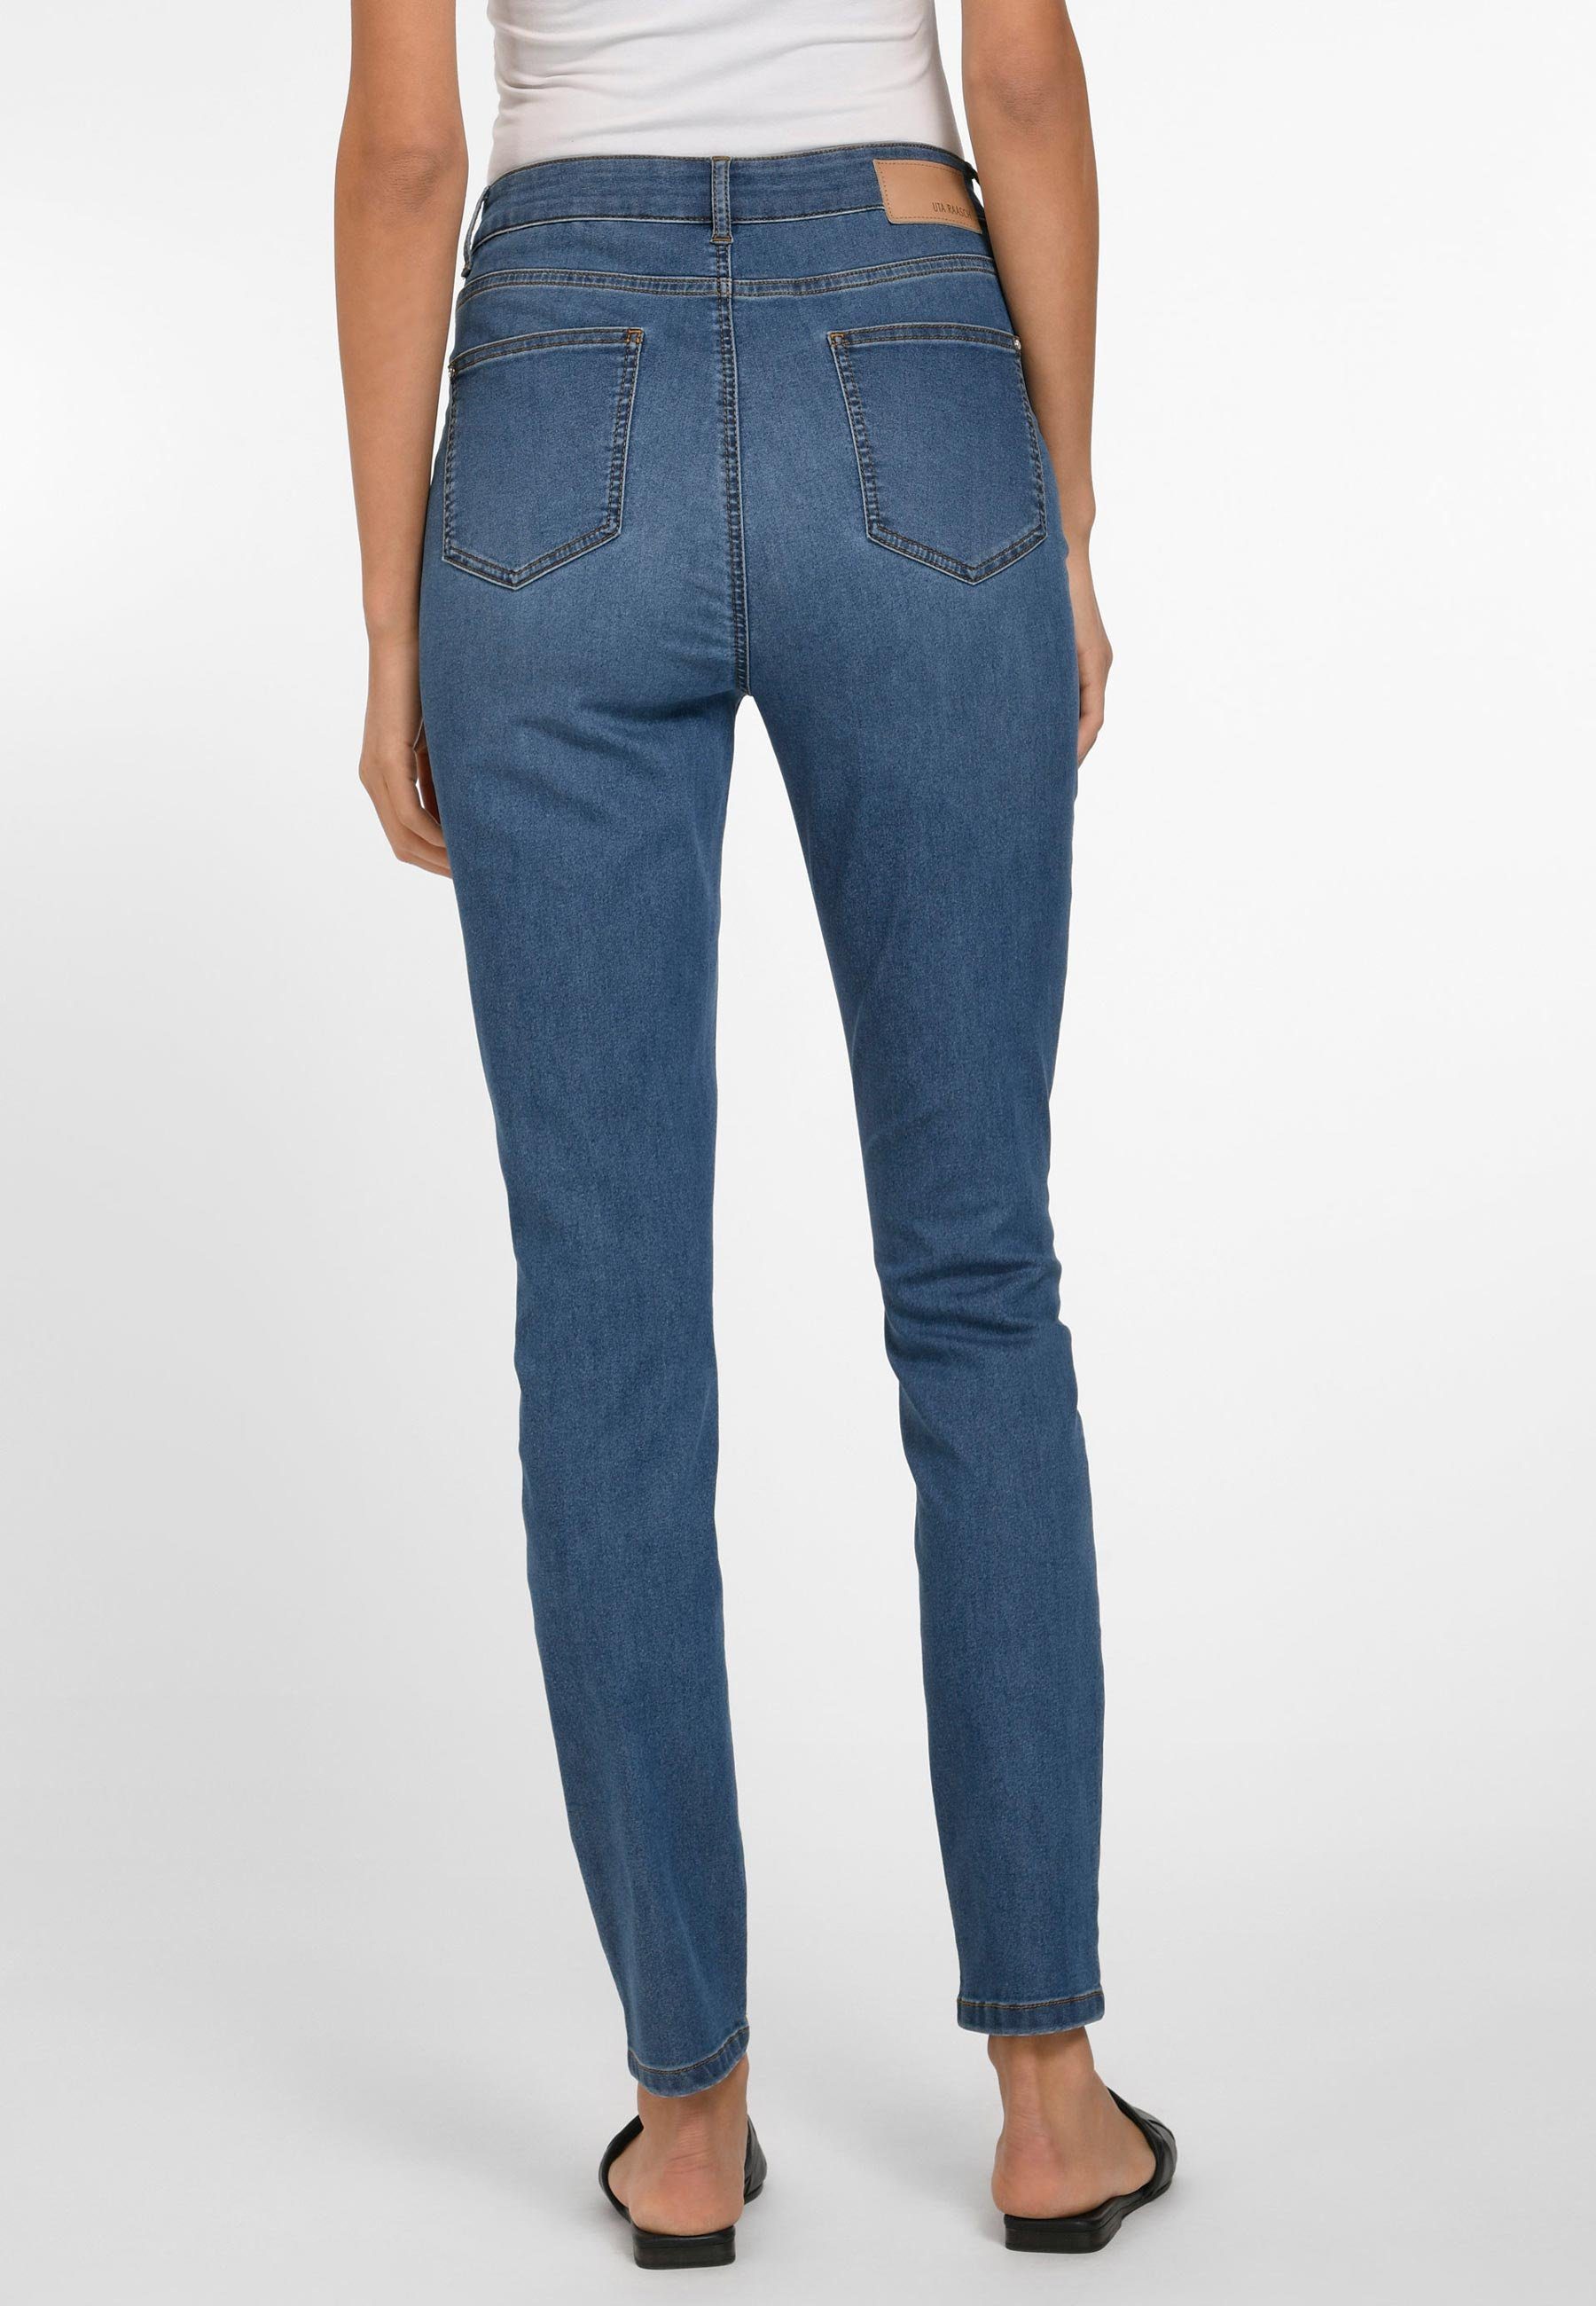 blue_denim Uta 5-Pocket-Jeans Raasch mit Cotton Taschen